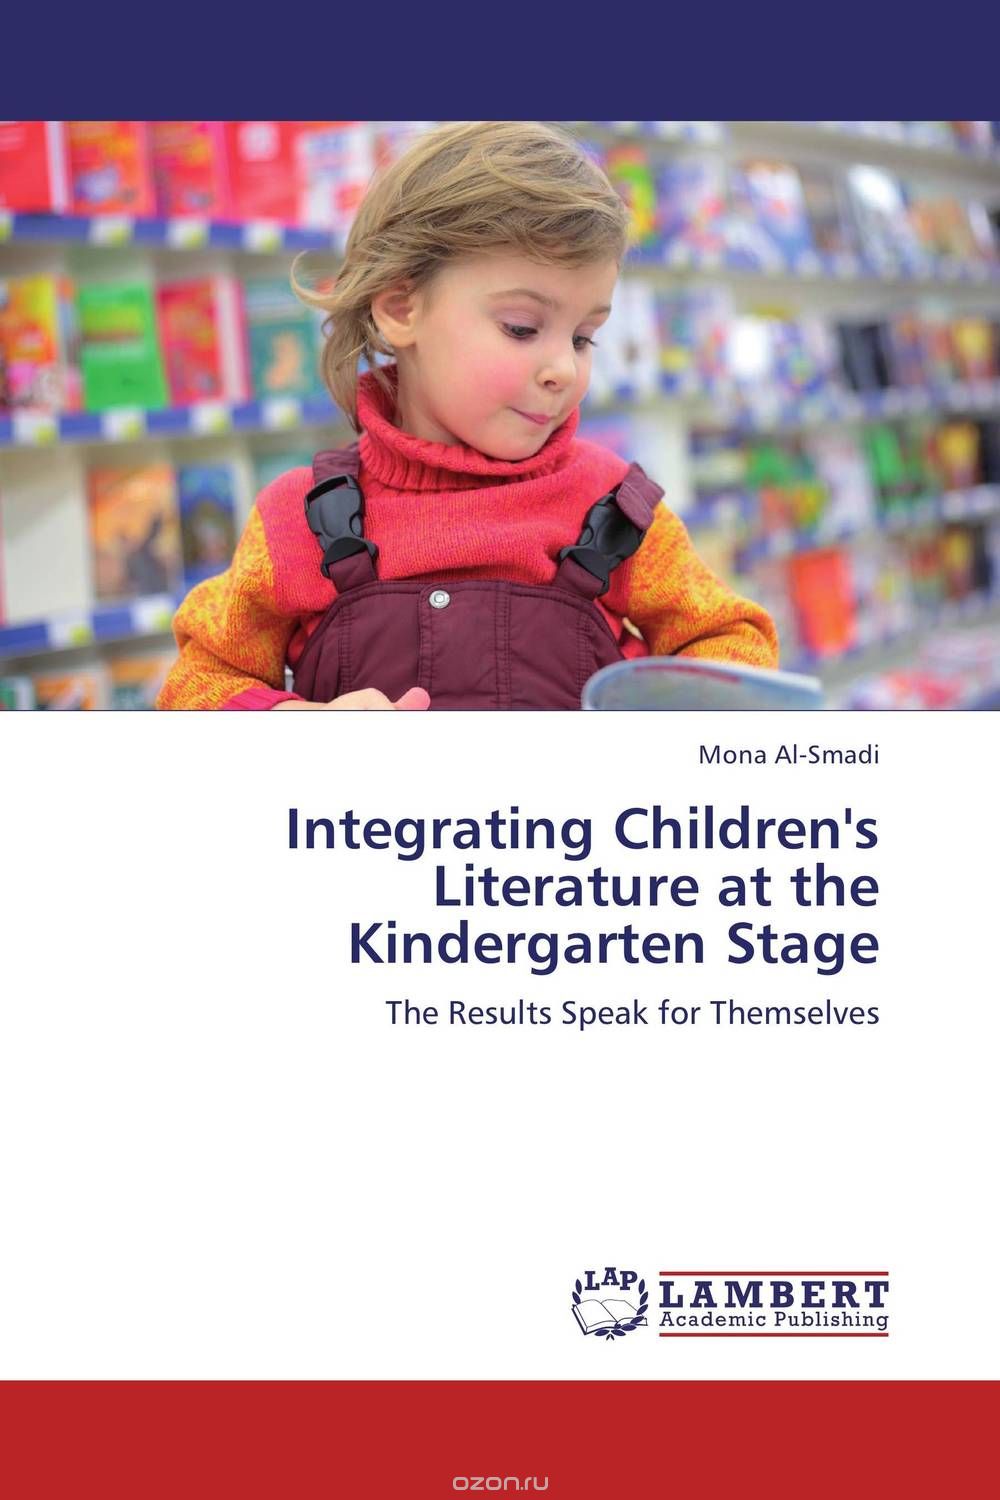 Скачать книгу "Integrating Children's Literature at the Kindergarten Stage"